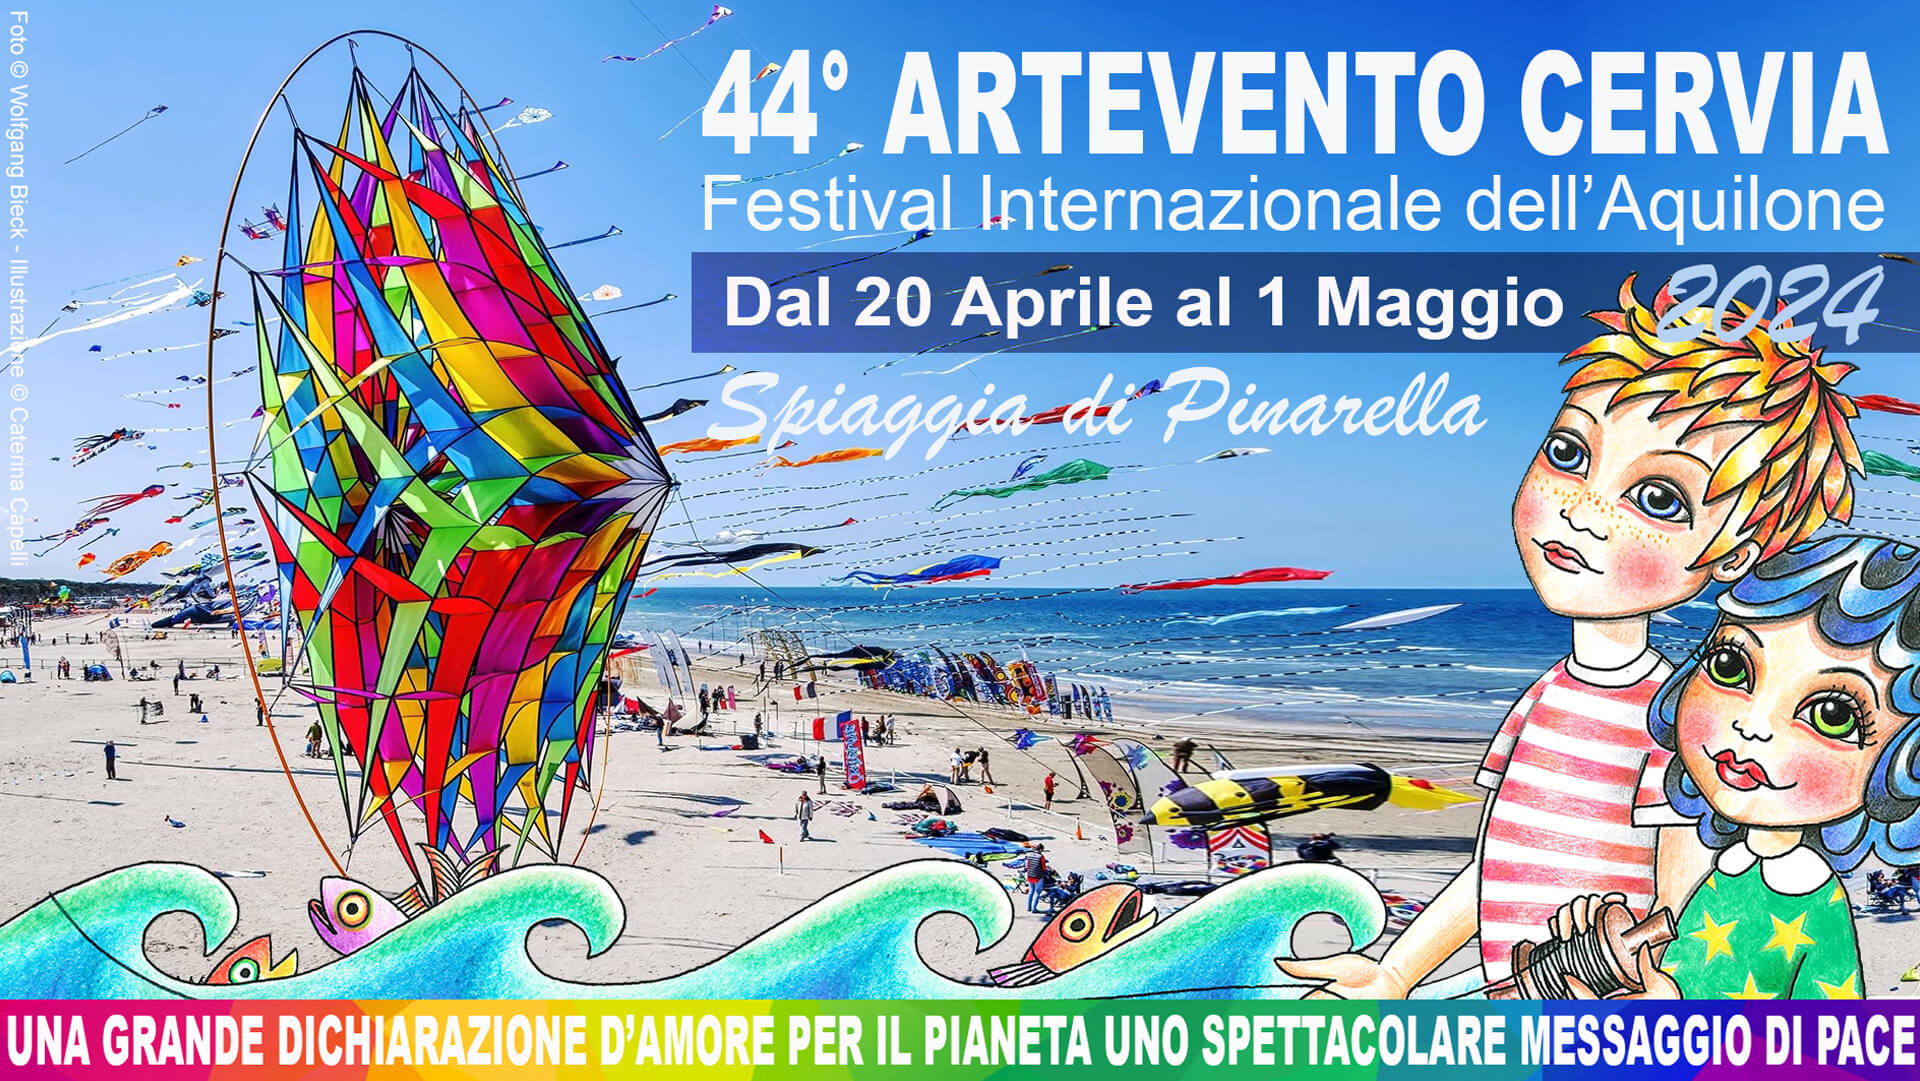 44° Artevento Cervia Festival Internazionale dell'Aquilone